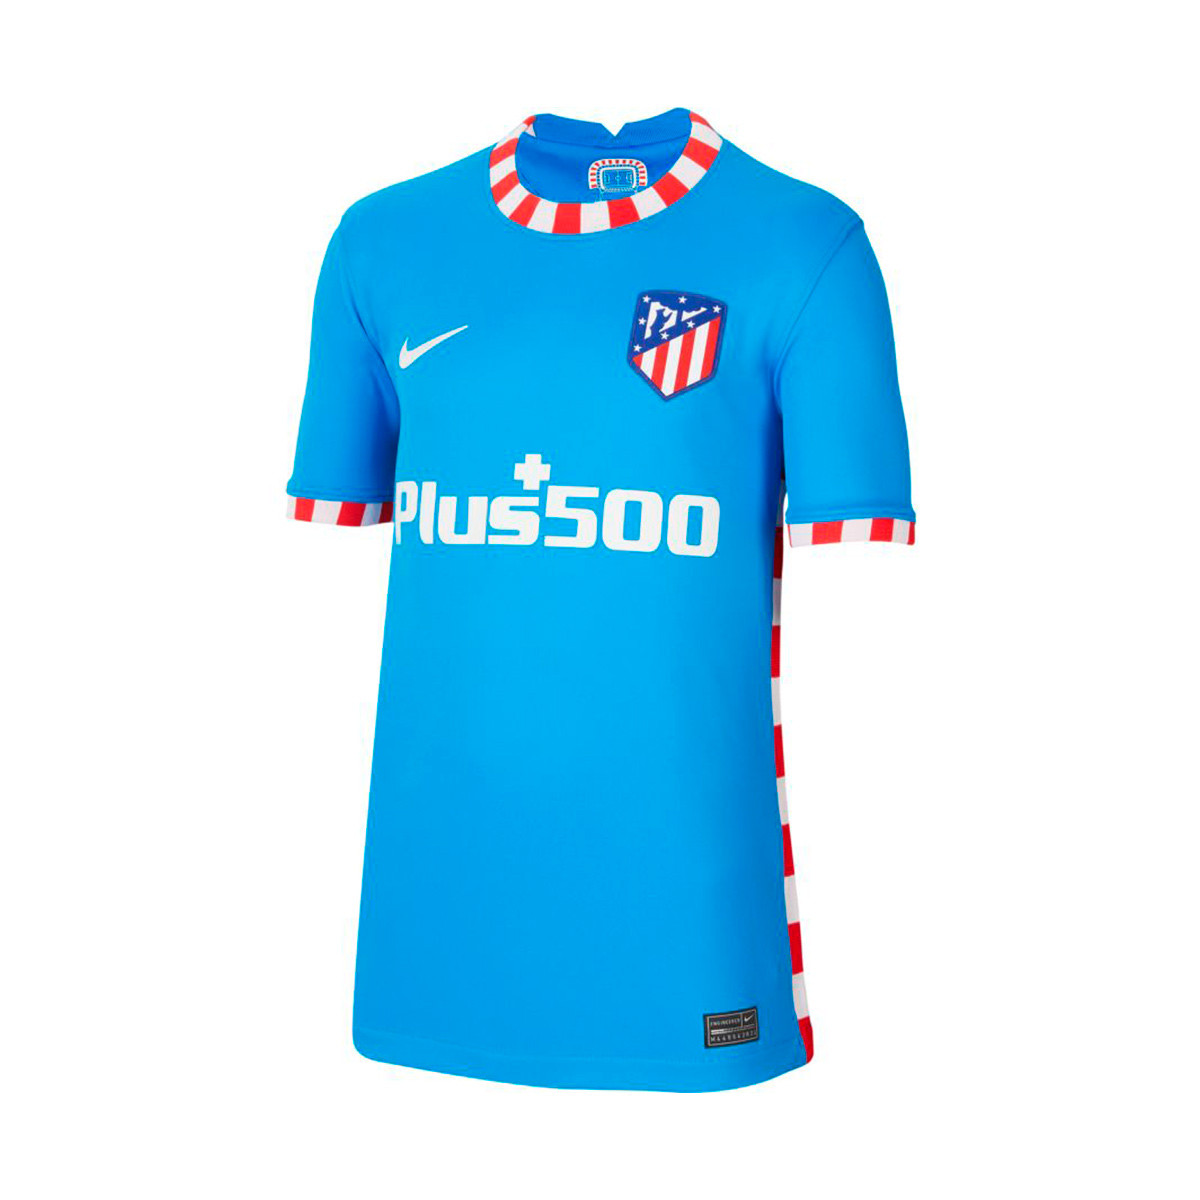 Camiseta Nike Atlético de Madrid Equipación Stadium Niño Blue - Emotion